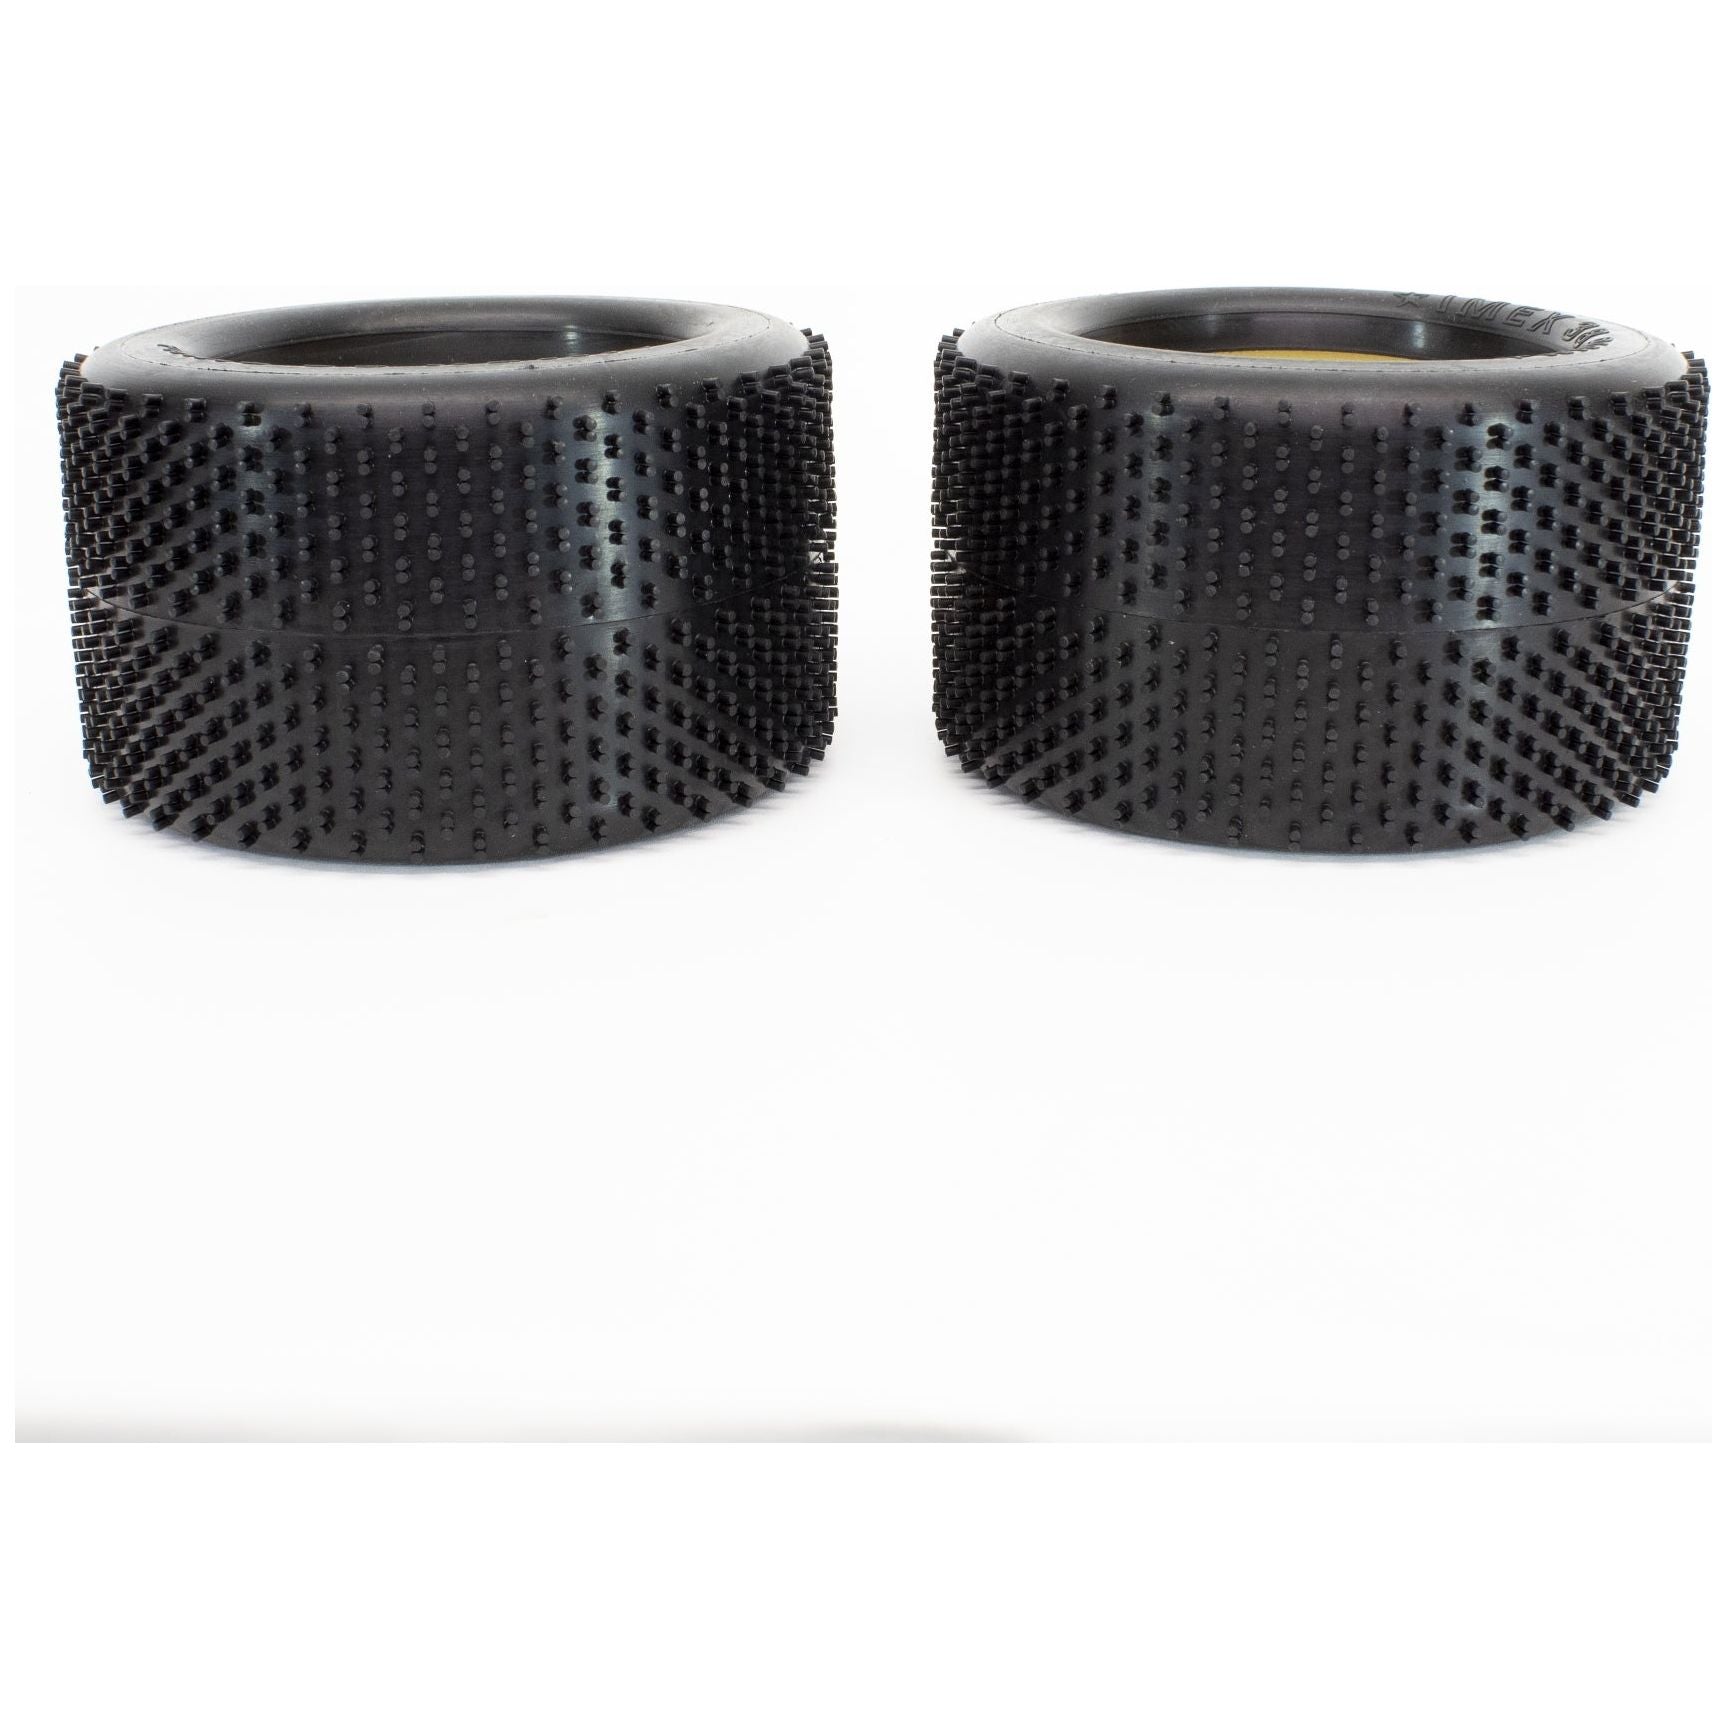 IMEX 3.8 Pinn Tires (1 Pair)